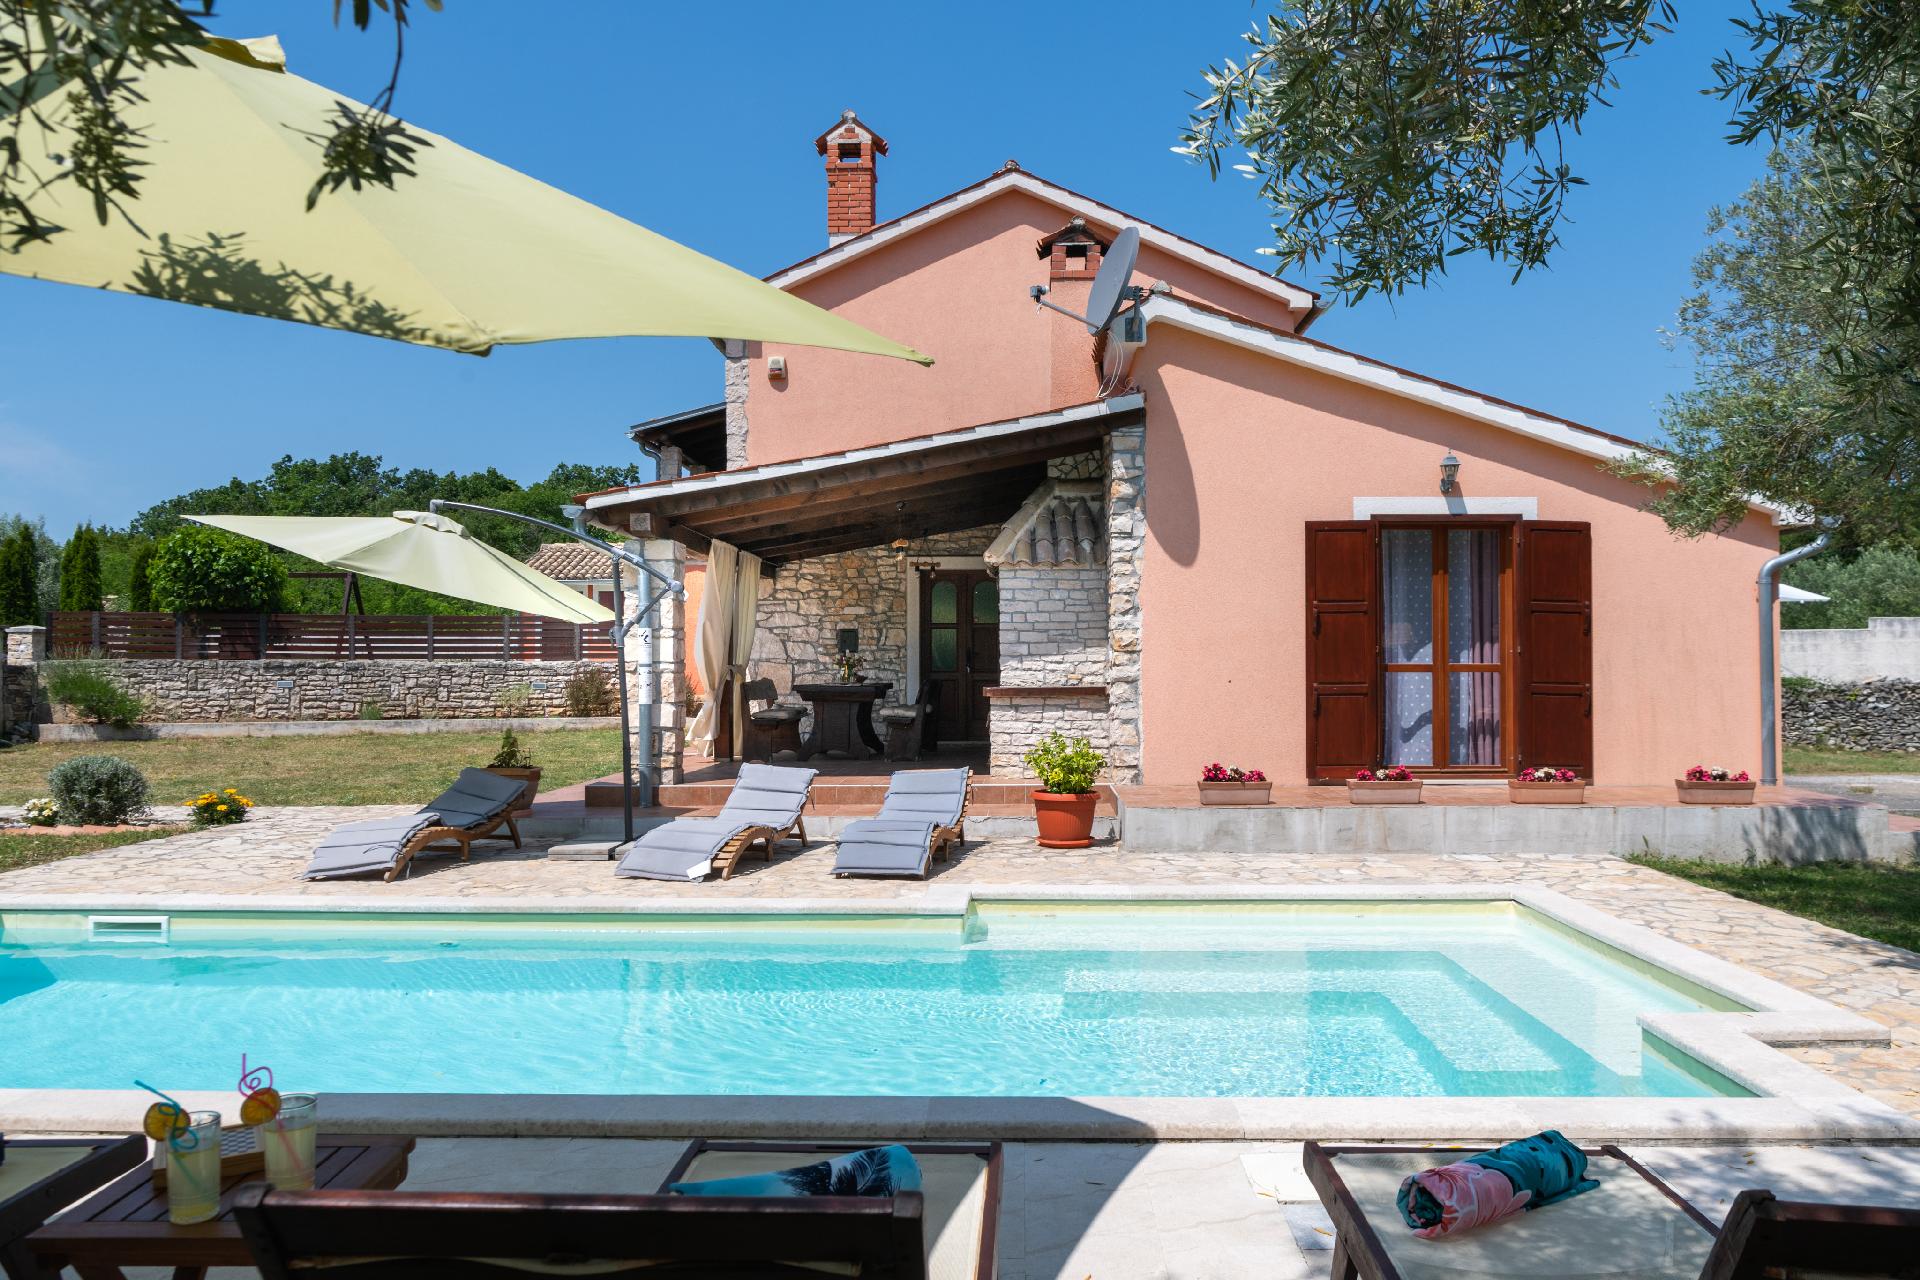 Ferienhaus mit Privatpool für 8 Personen ca.   in Istrien